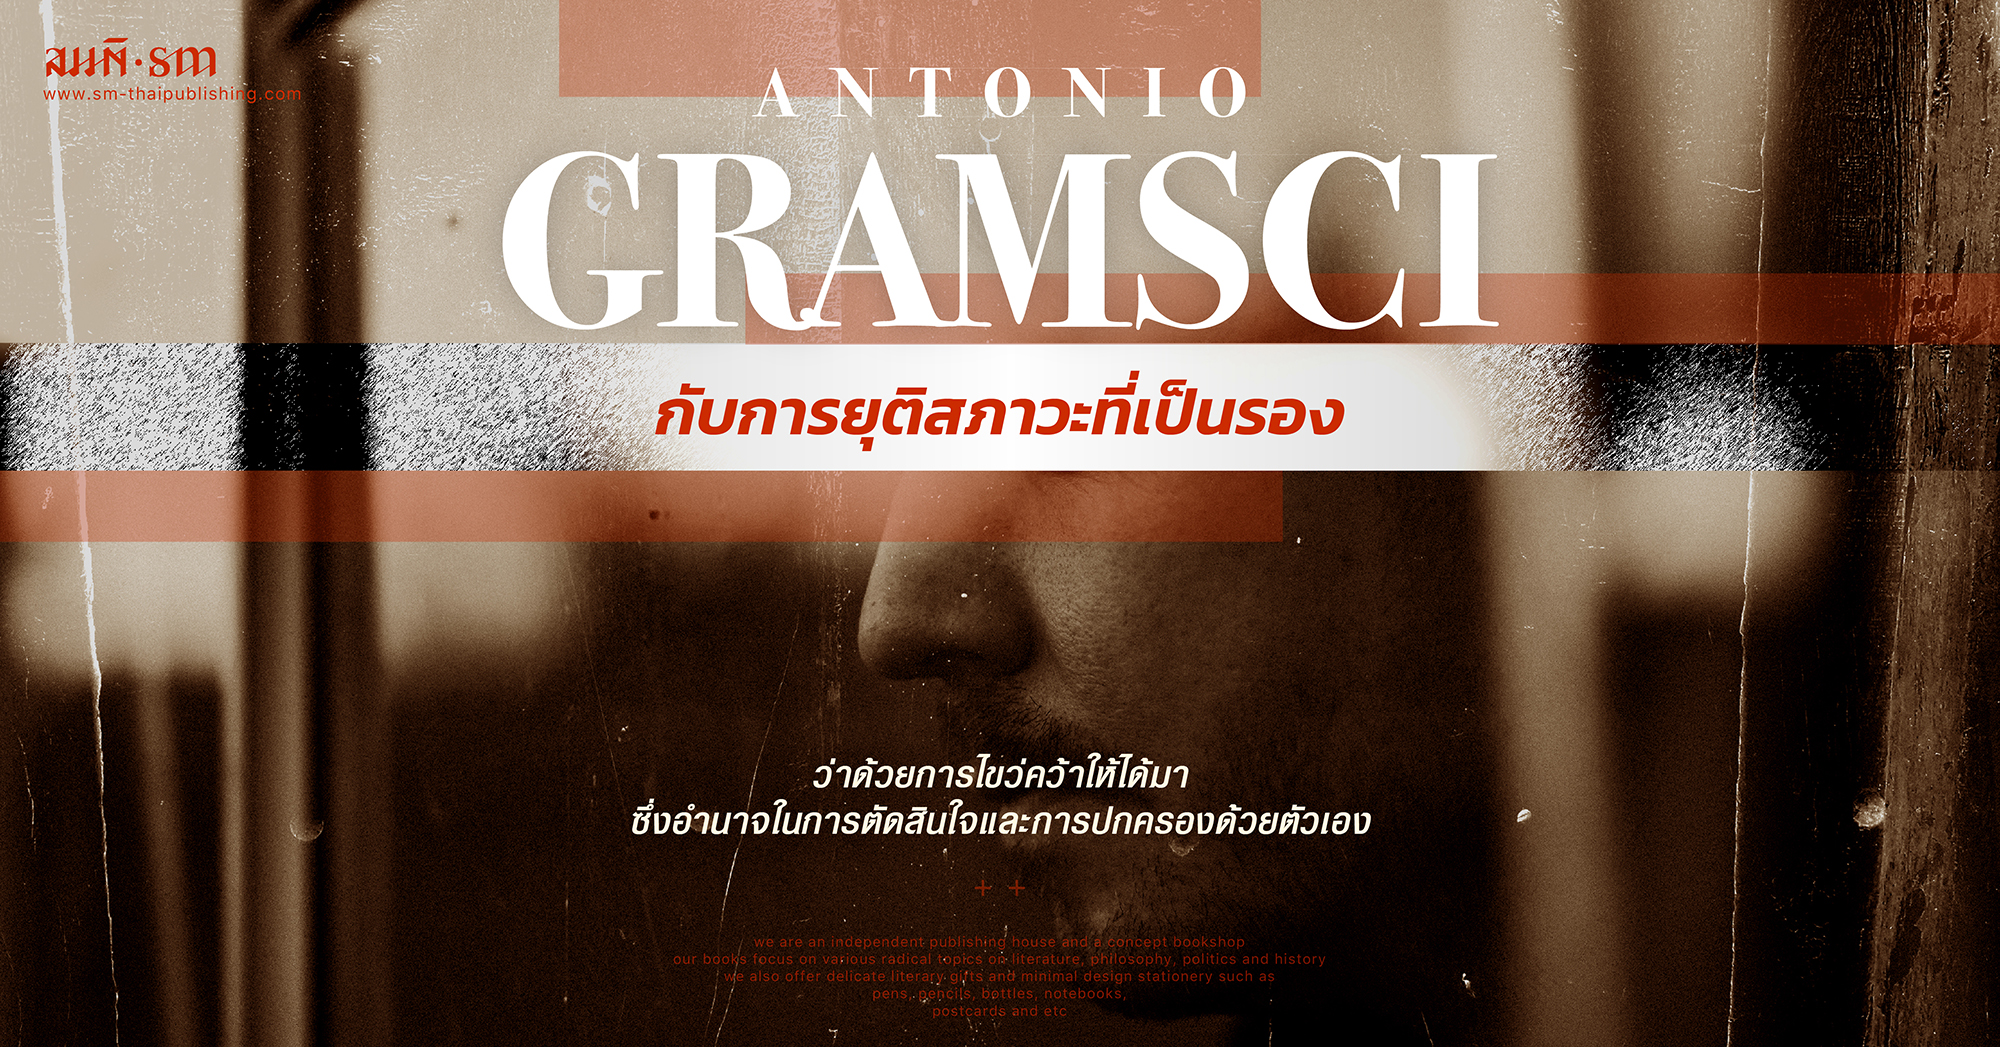 อันโตนิโอ กรัมชี่ | Antonio Gramsci กับการยุติสภาวะที่เป็นรอง